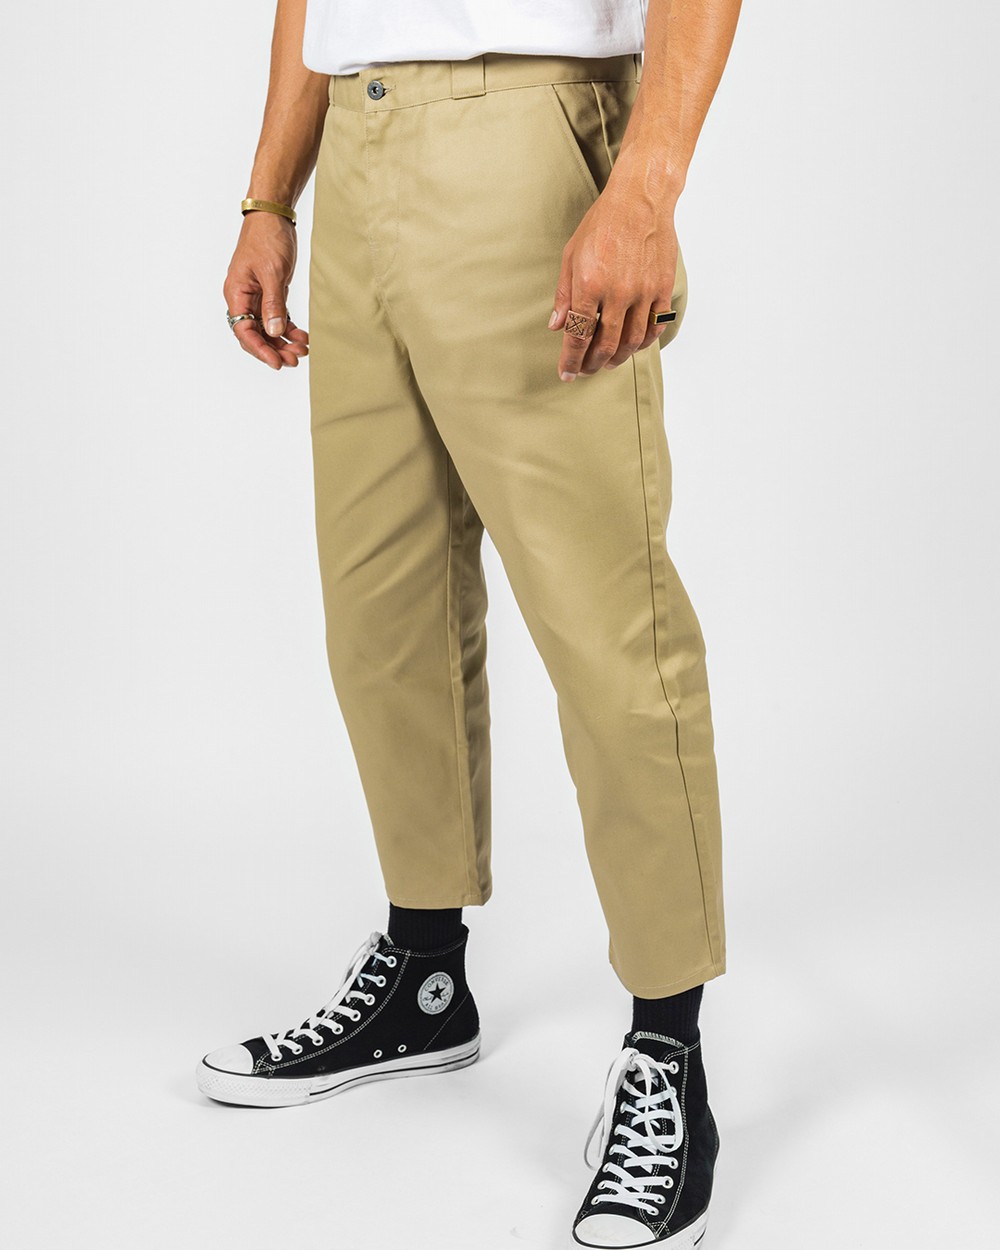 Adidas Ultimate 365 Tapered Stretch Golf Pants Mens Size 34x34 Navy Meas.  34x33 - CÔNG TY TNHH DỊCH VỤ BẢO VỆ THĂNG LONG SECOM